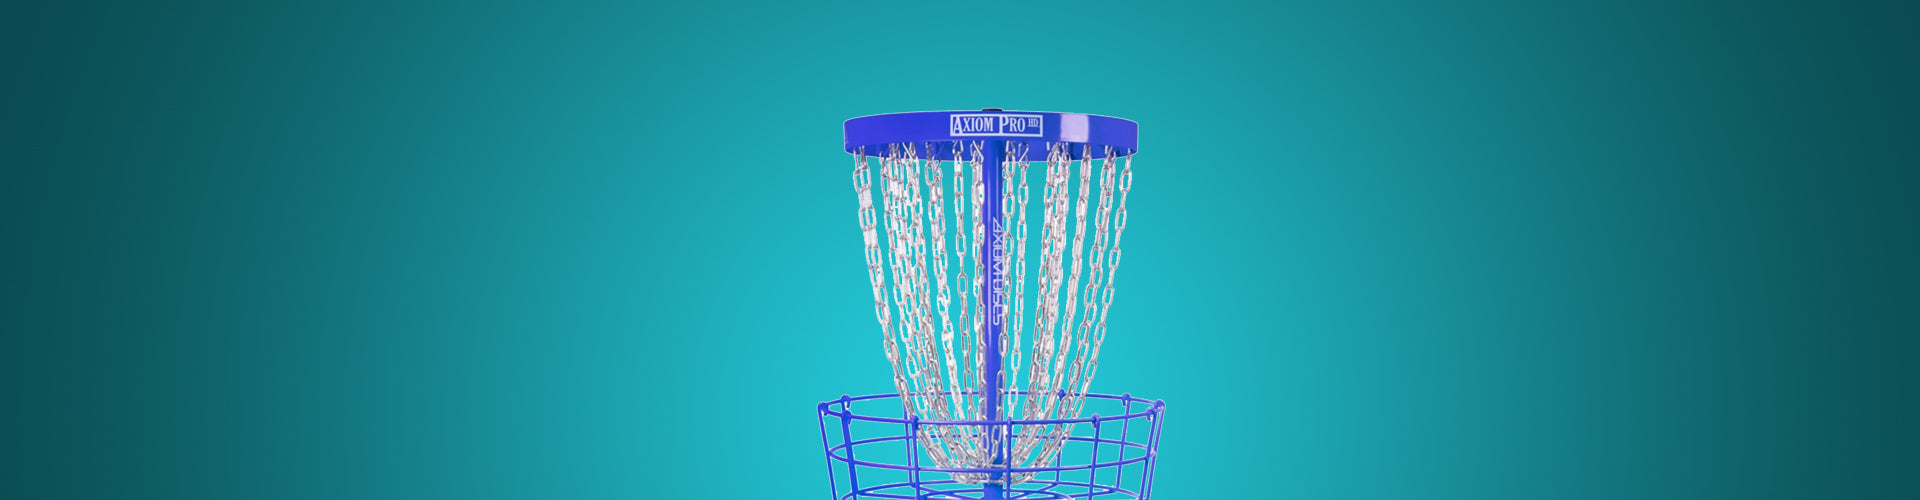 Disc Golf Baskets